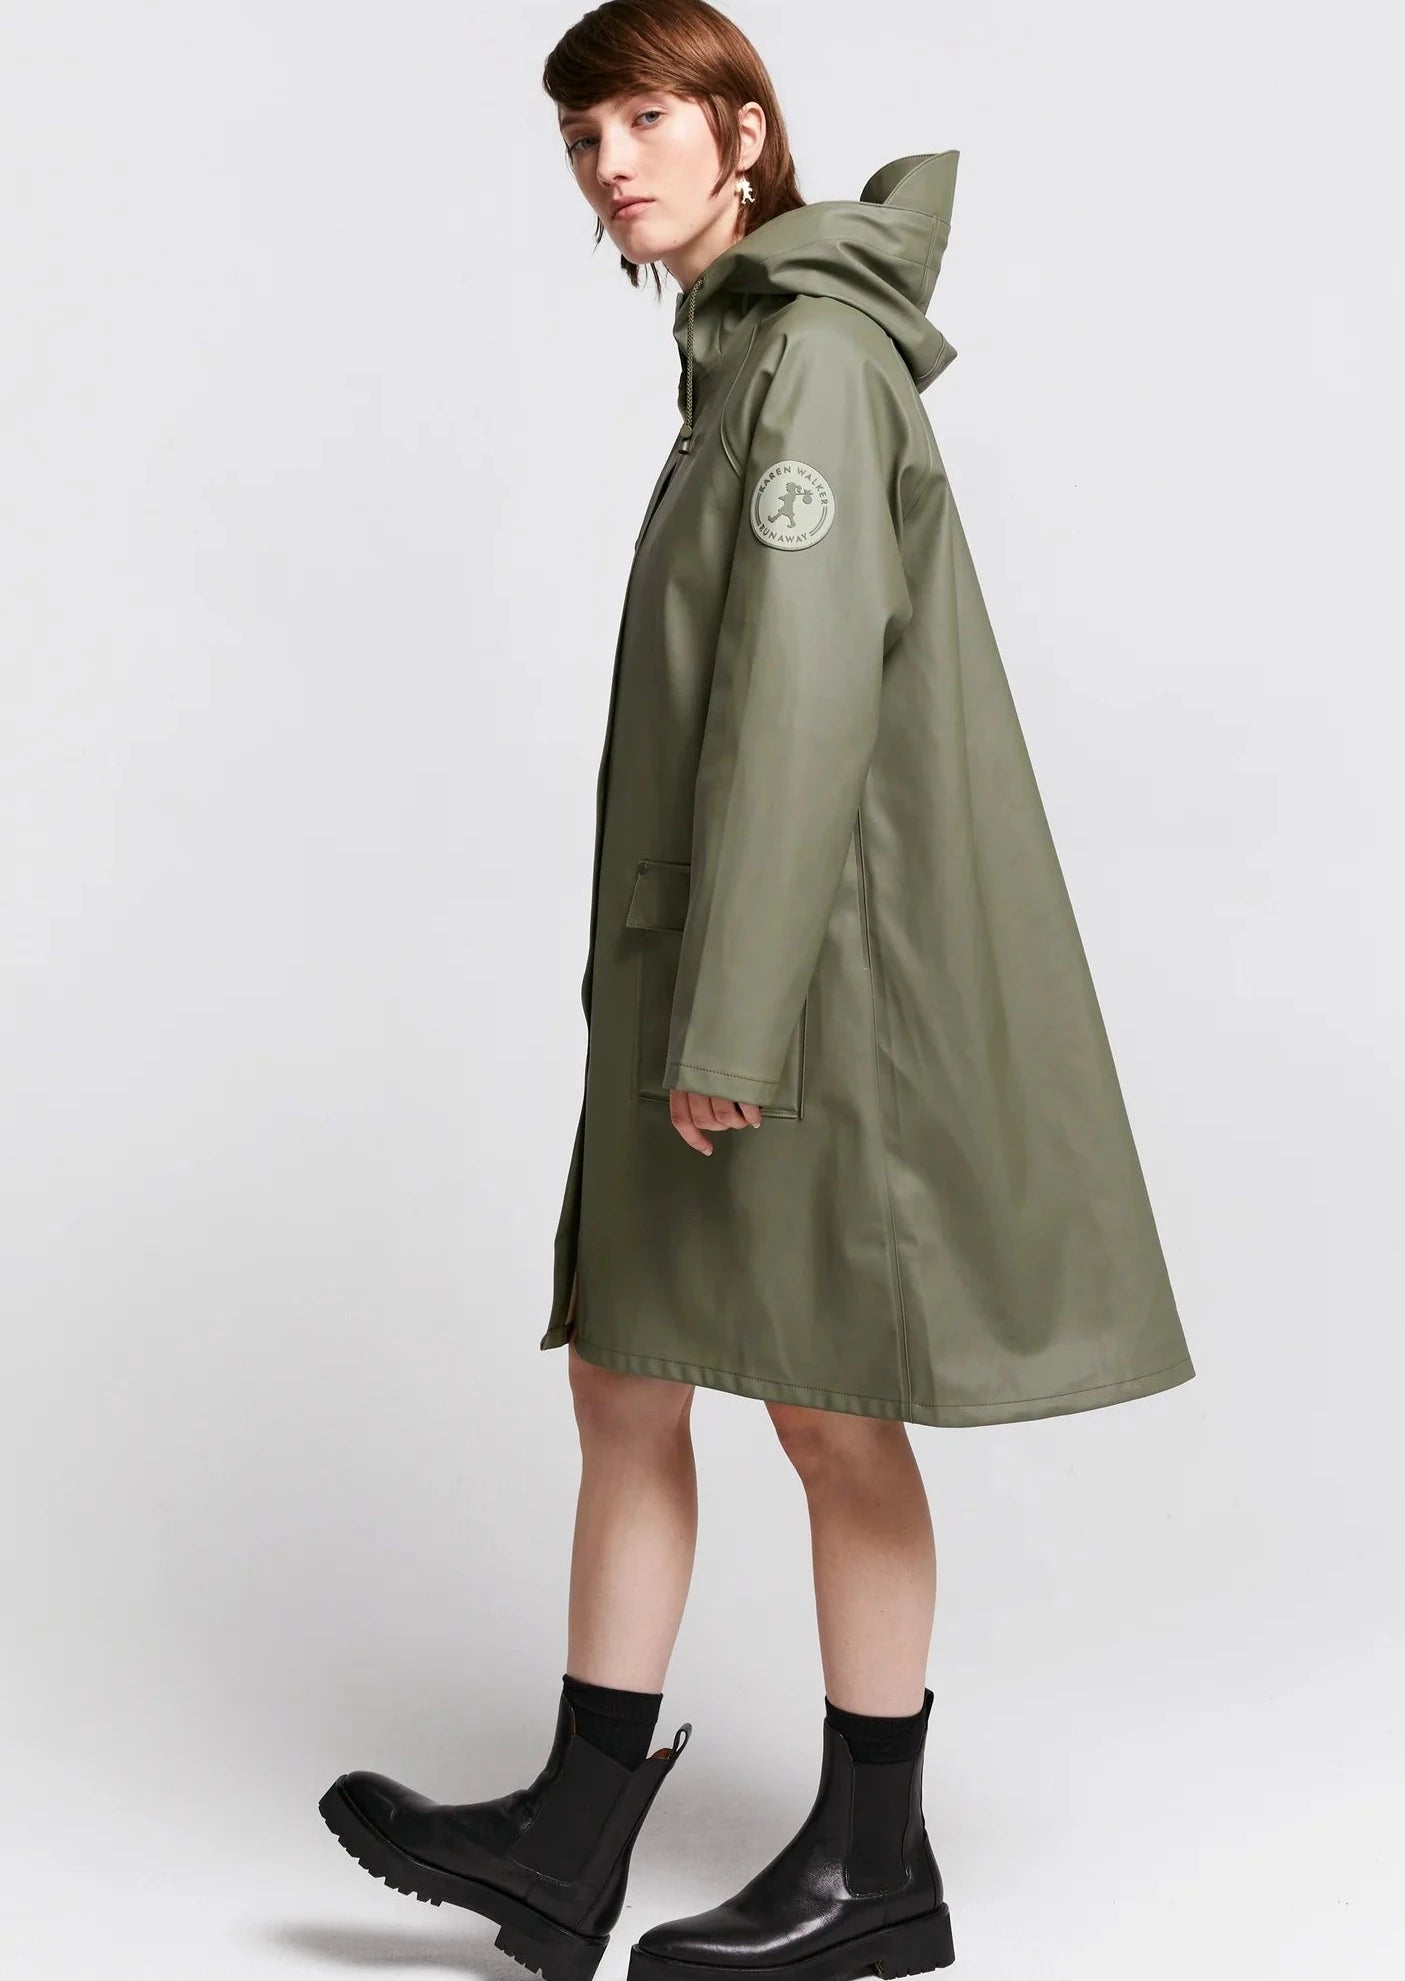 Runaway Raincoat - Olive